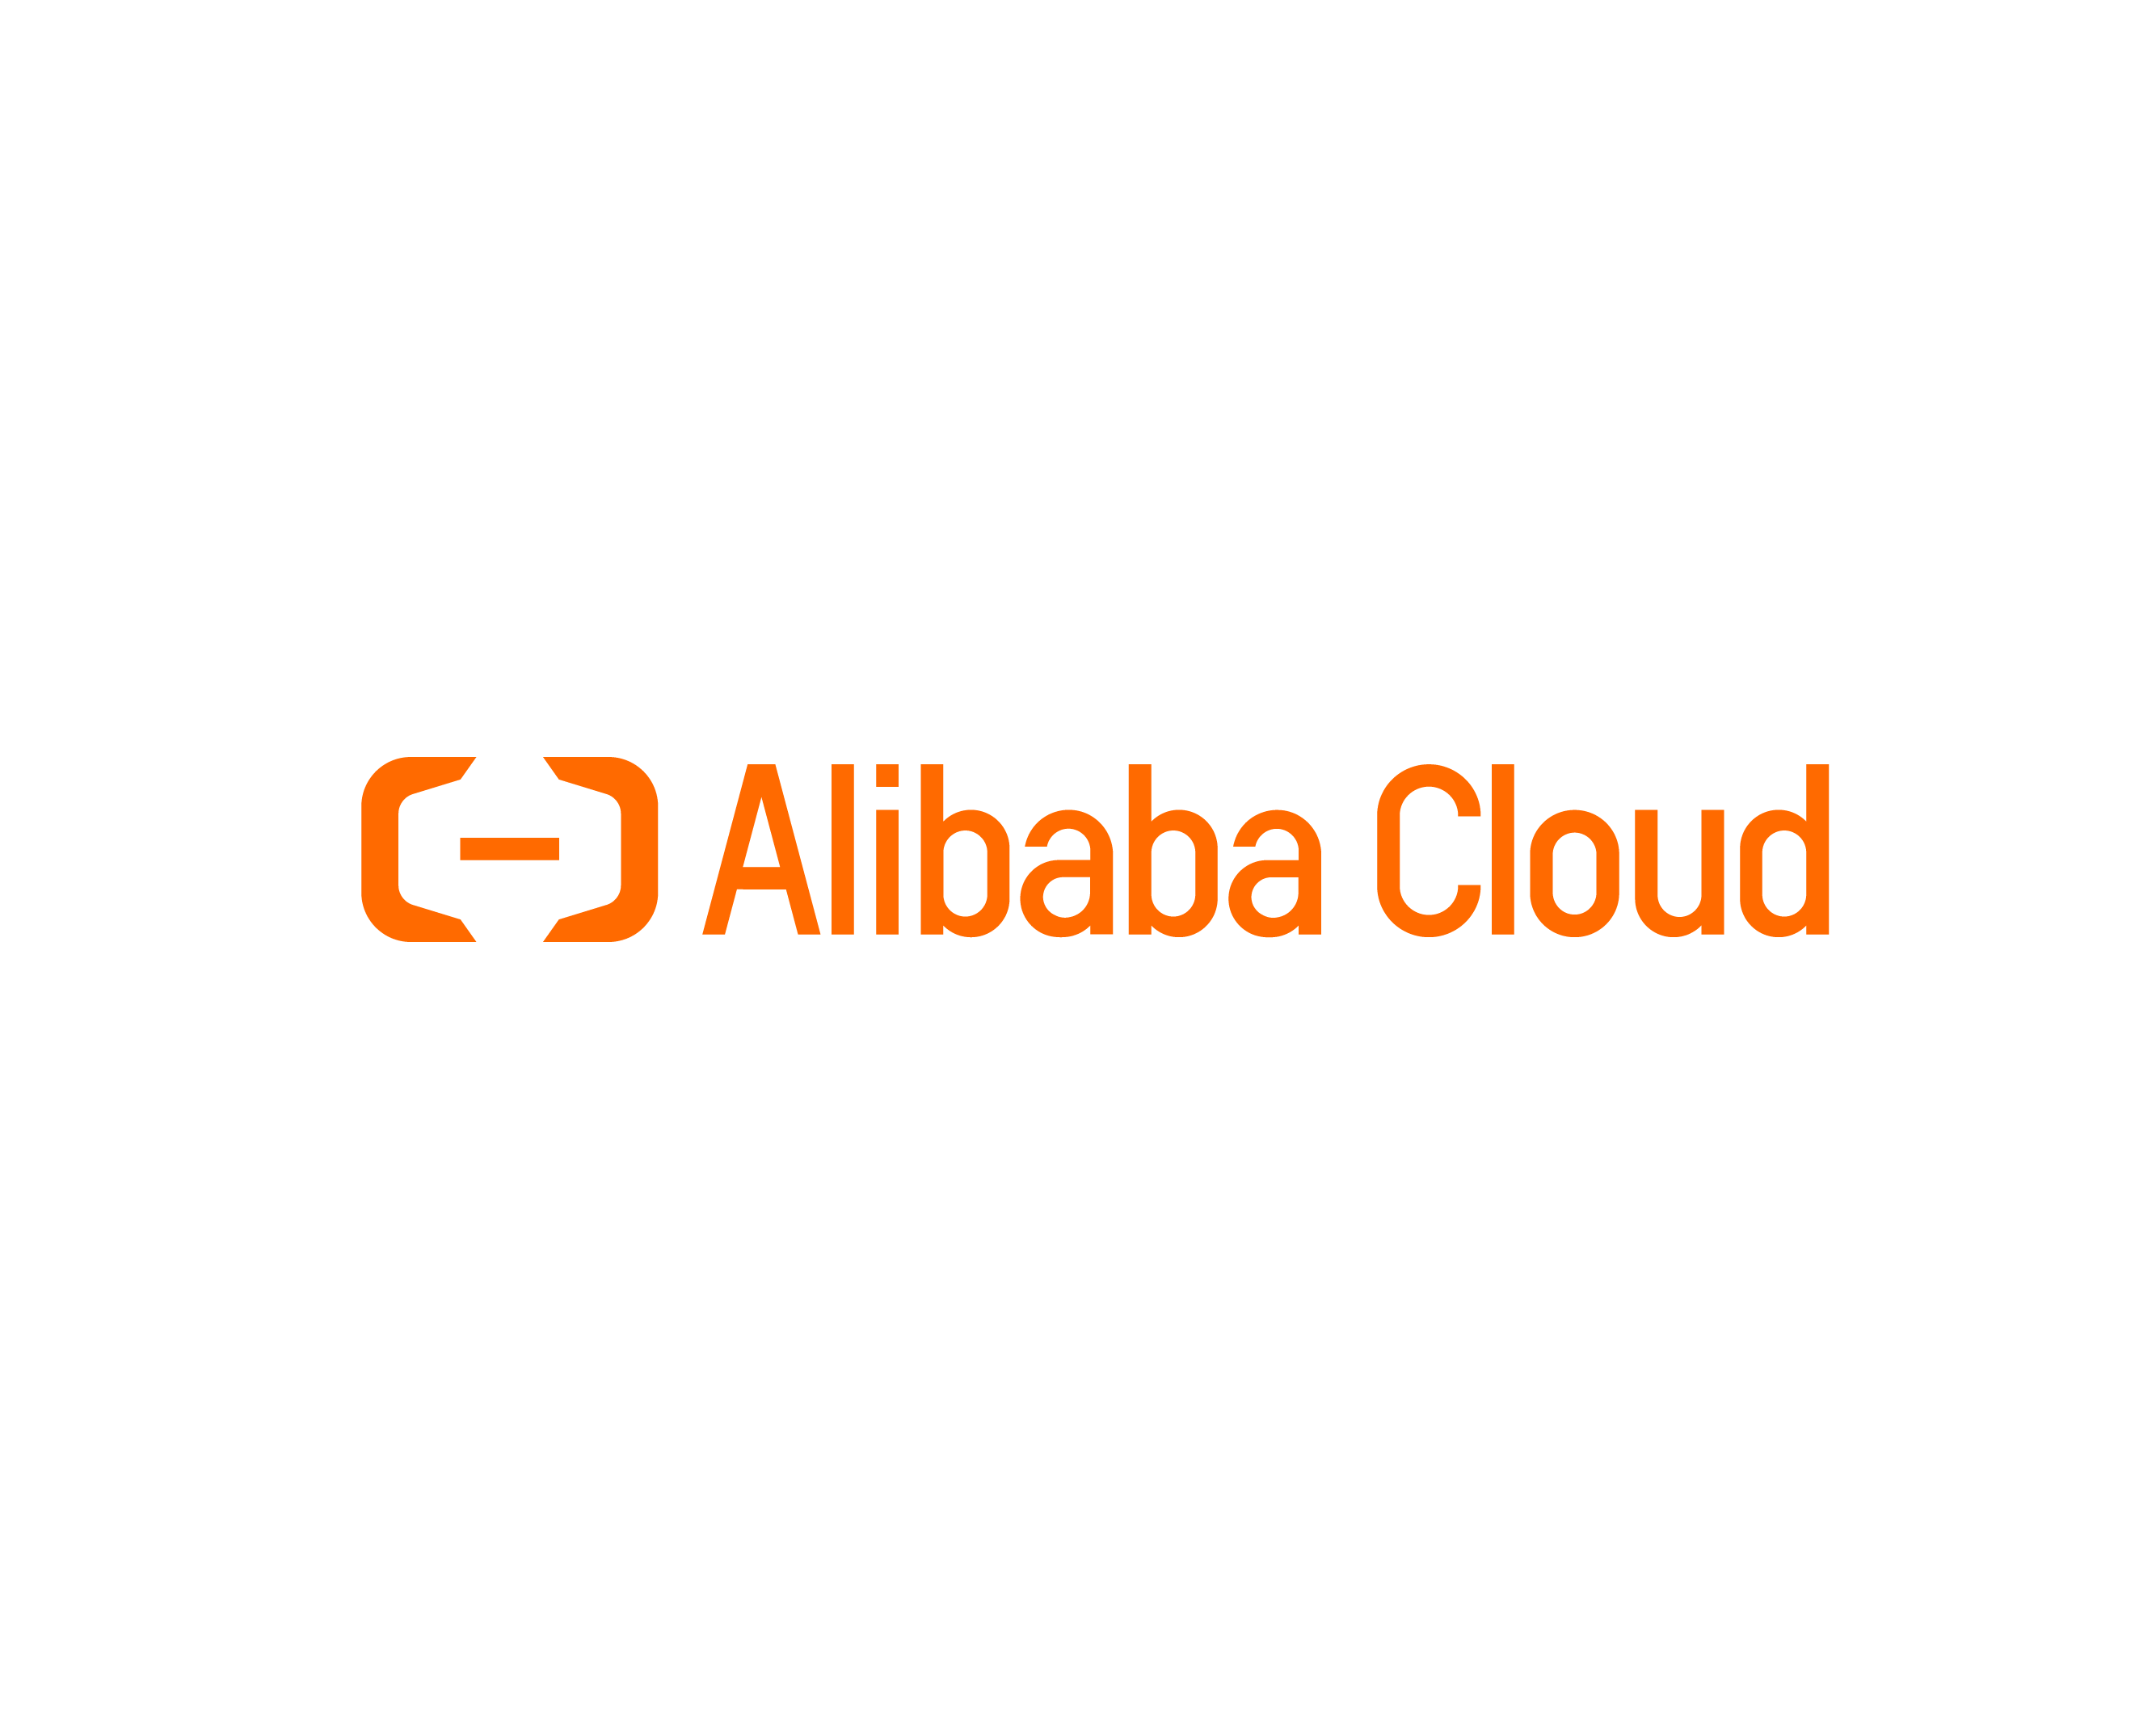 Alibaba Cloud Digital Transformation